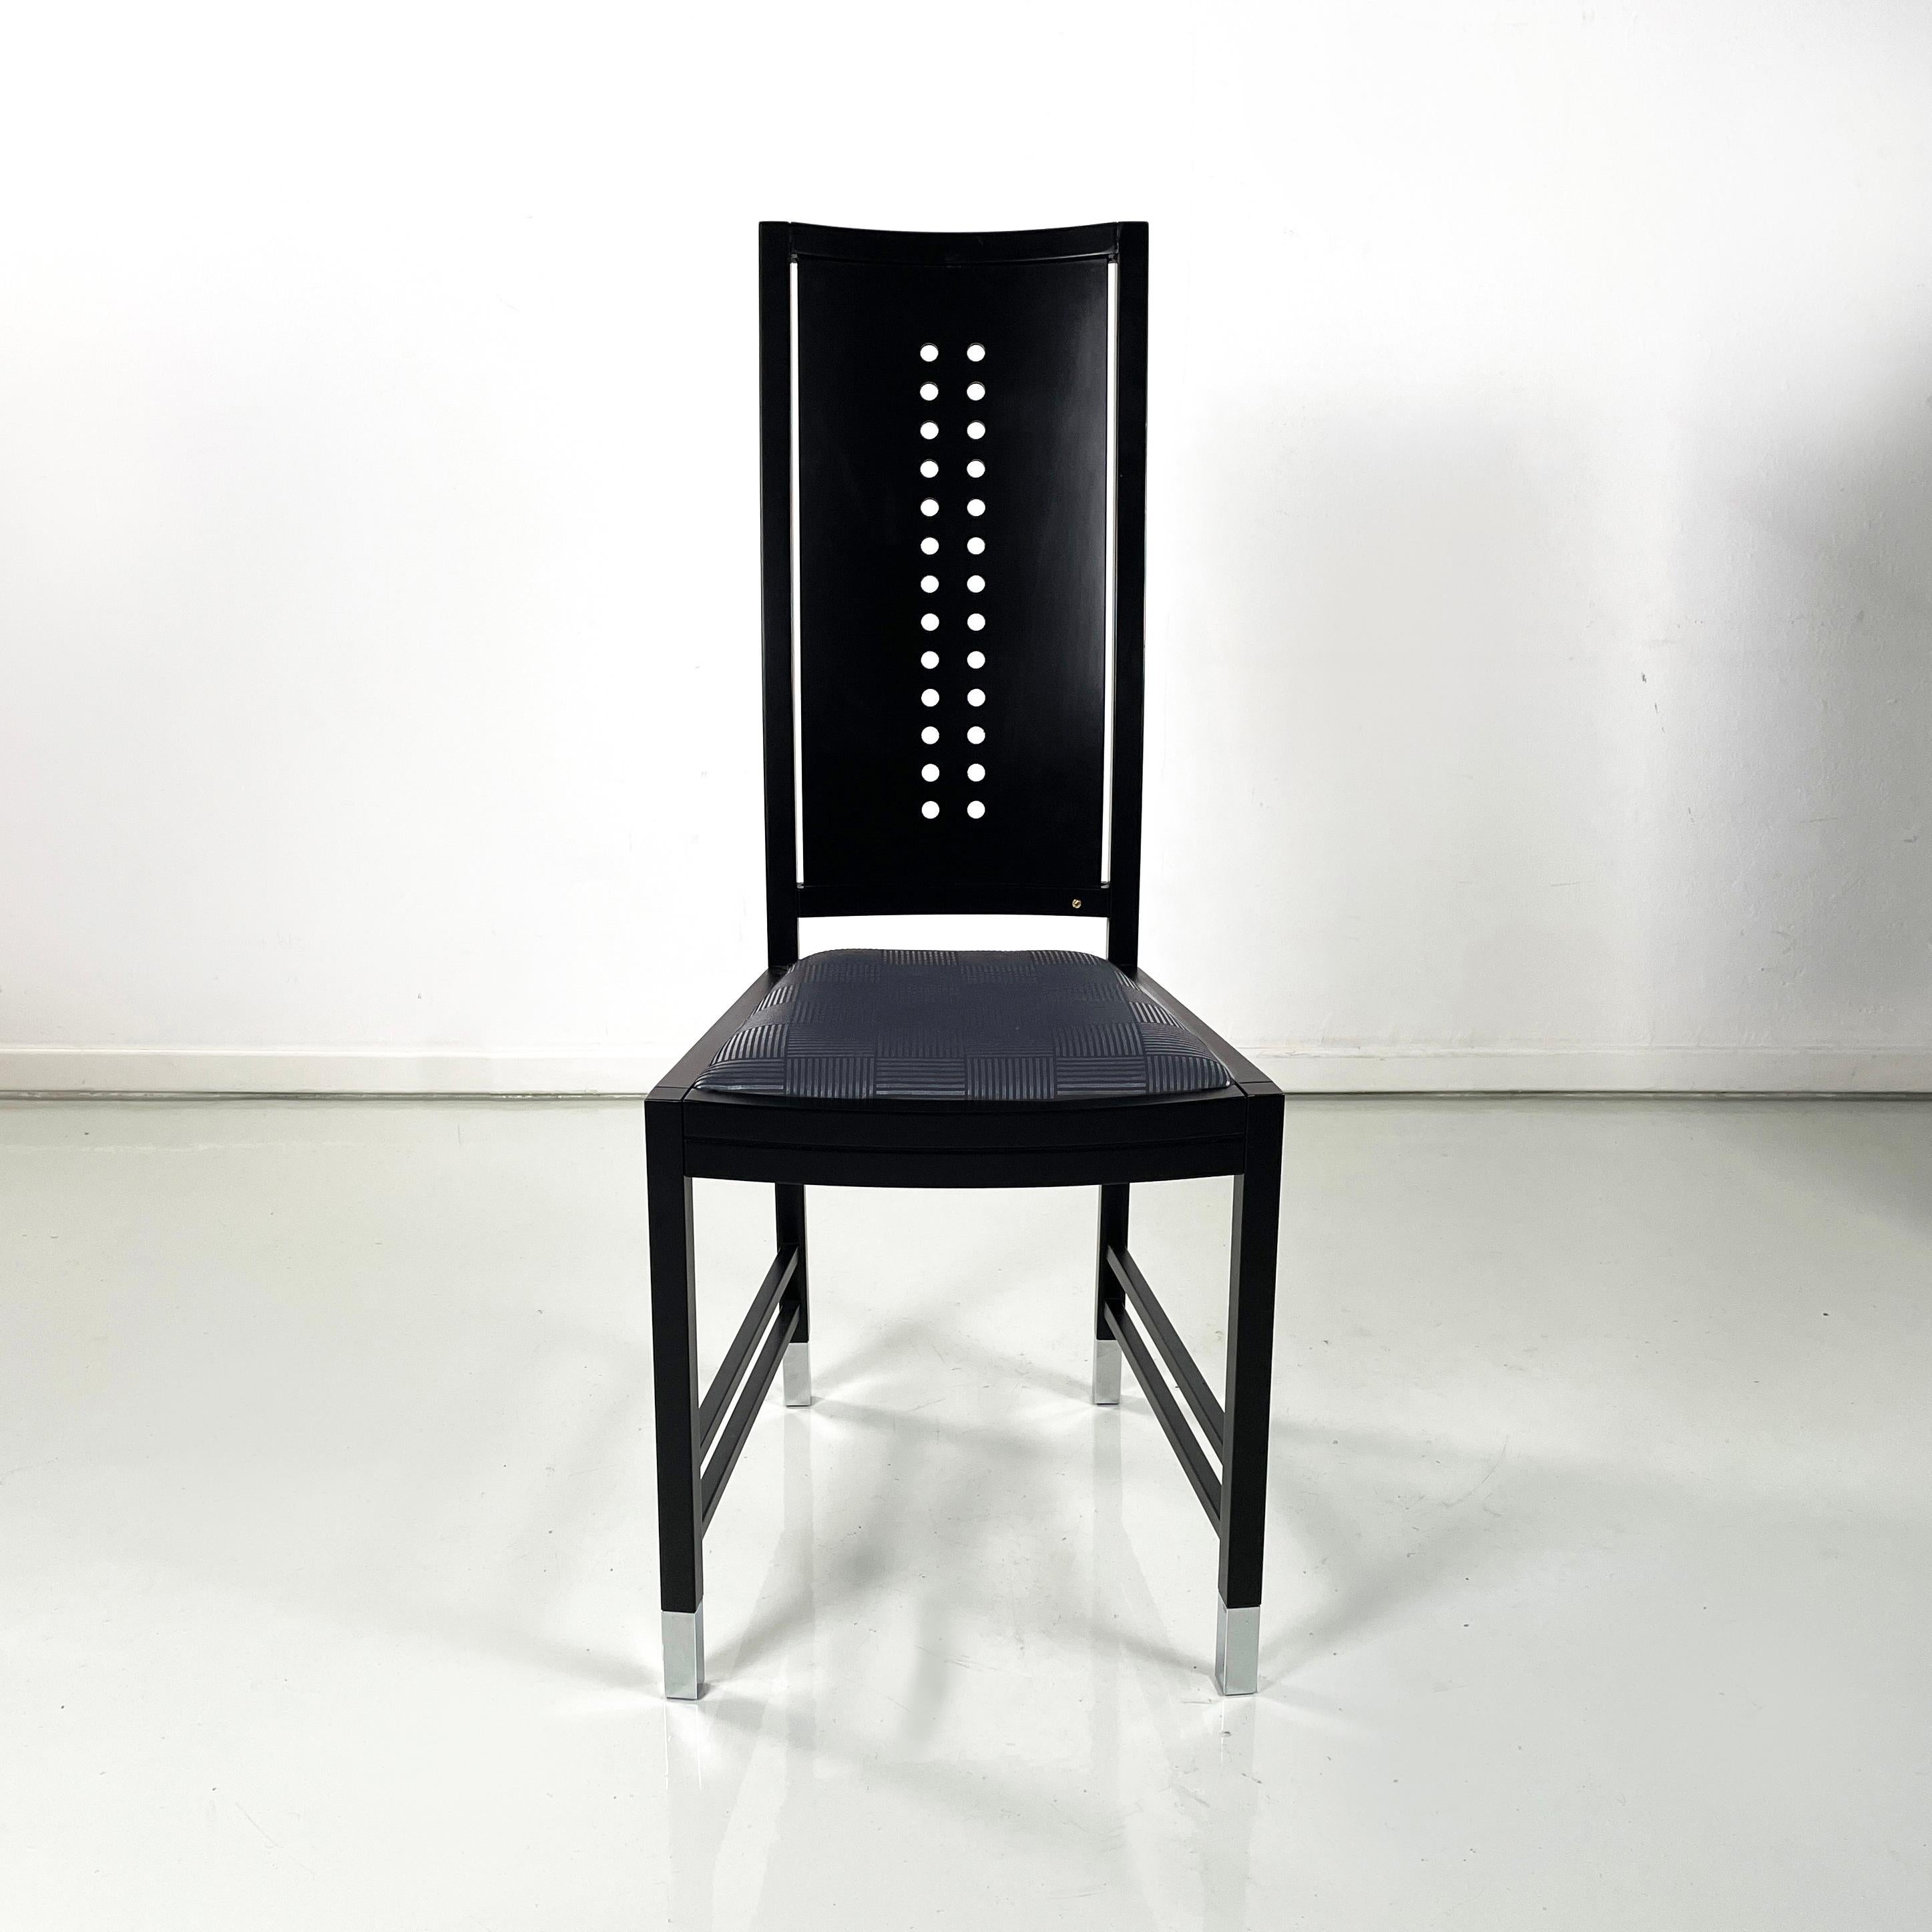 Chaises modernes autrichiennes en bois noir par Ernst W. Beranek pour Thonet, années 1990
Ensemble de trois chaises à assise carrée, rembourrées et recouvertes de tissu noir à motif géométrique argenté. Structure en bois laqué noir avec finition